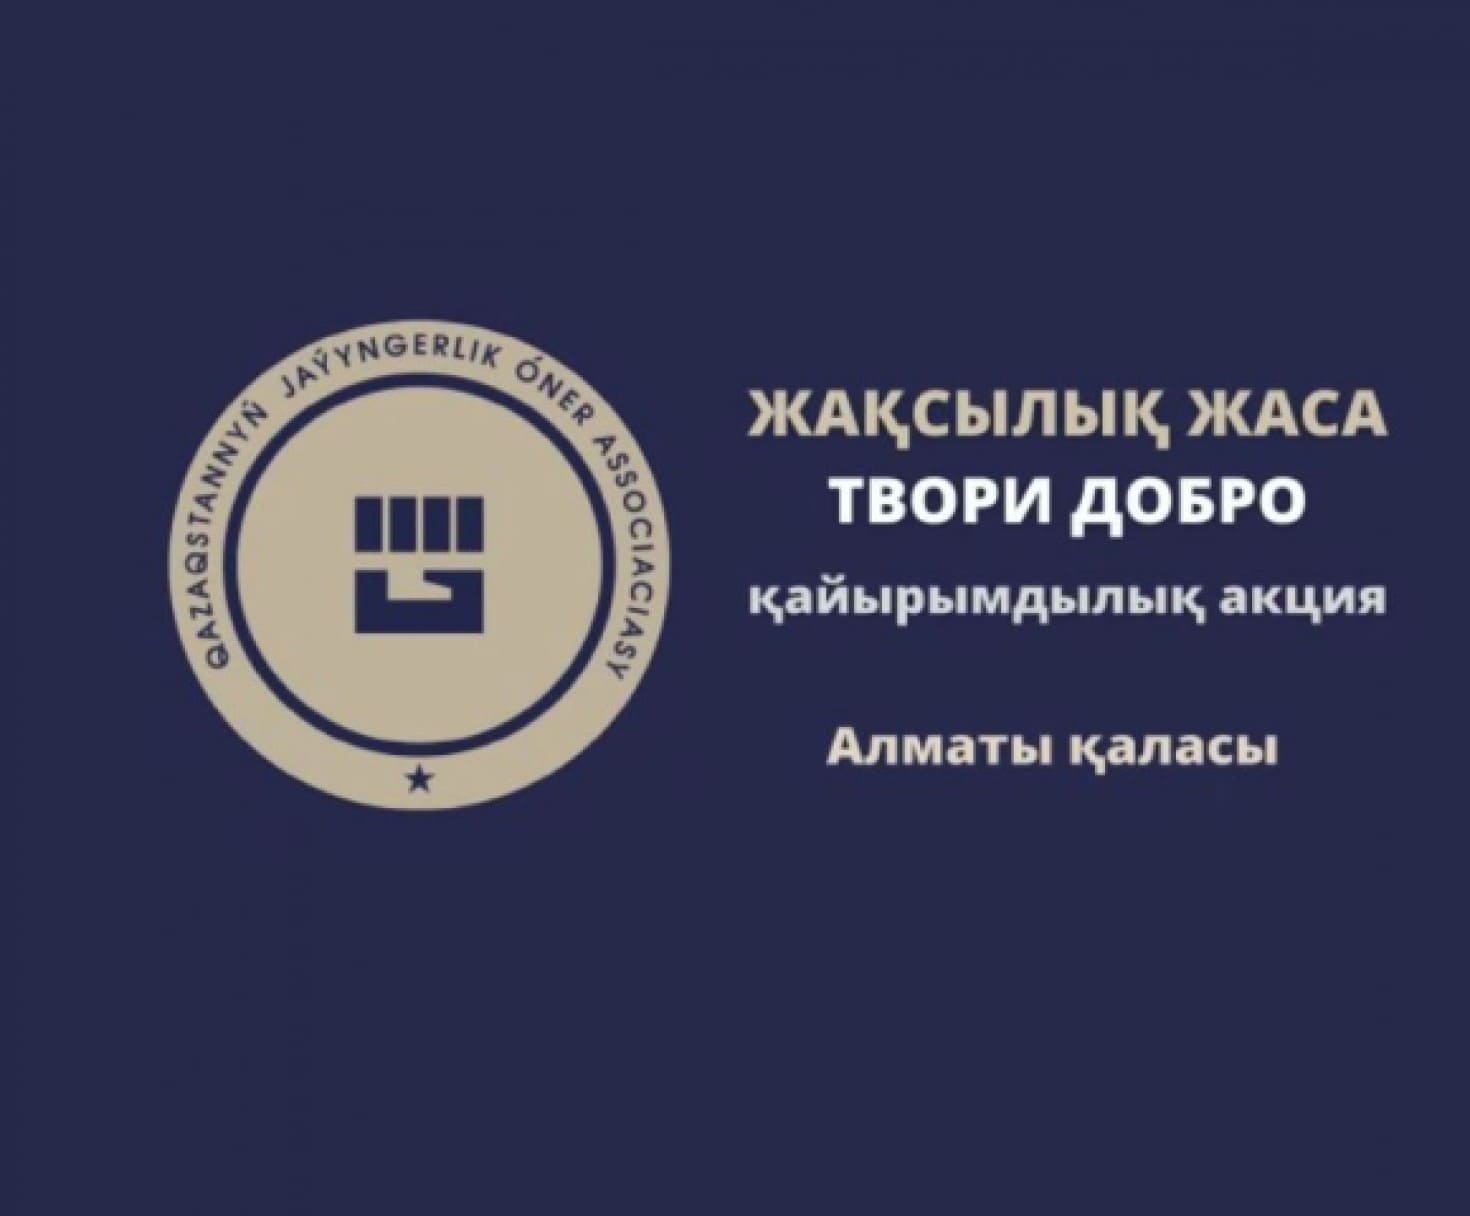 Ассоциация боевых искусств г. Алматы и городская федерация муайтай поддержали республиканскую акцию «Твори добро».